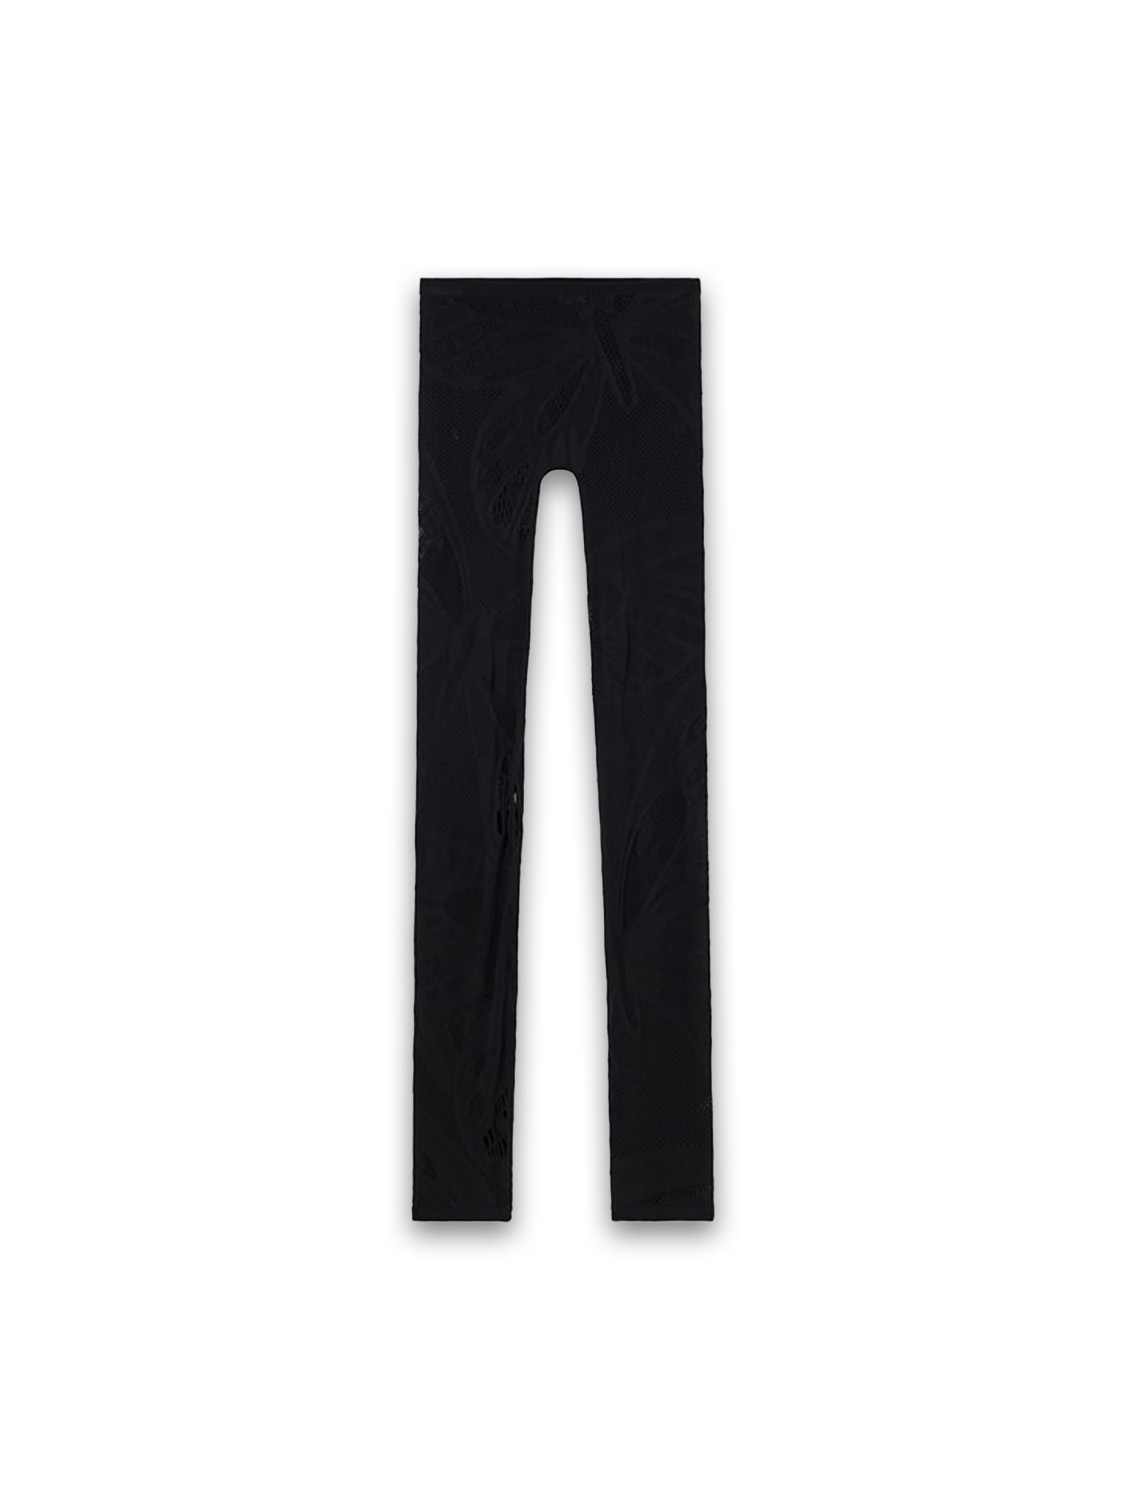 Blumarine Jacquard knit leggings  black XS/S